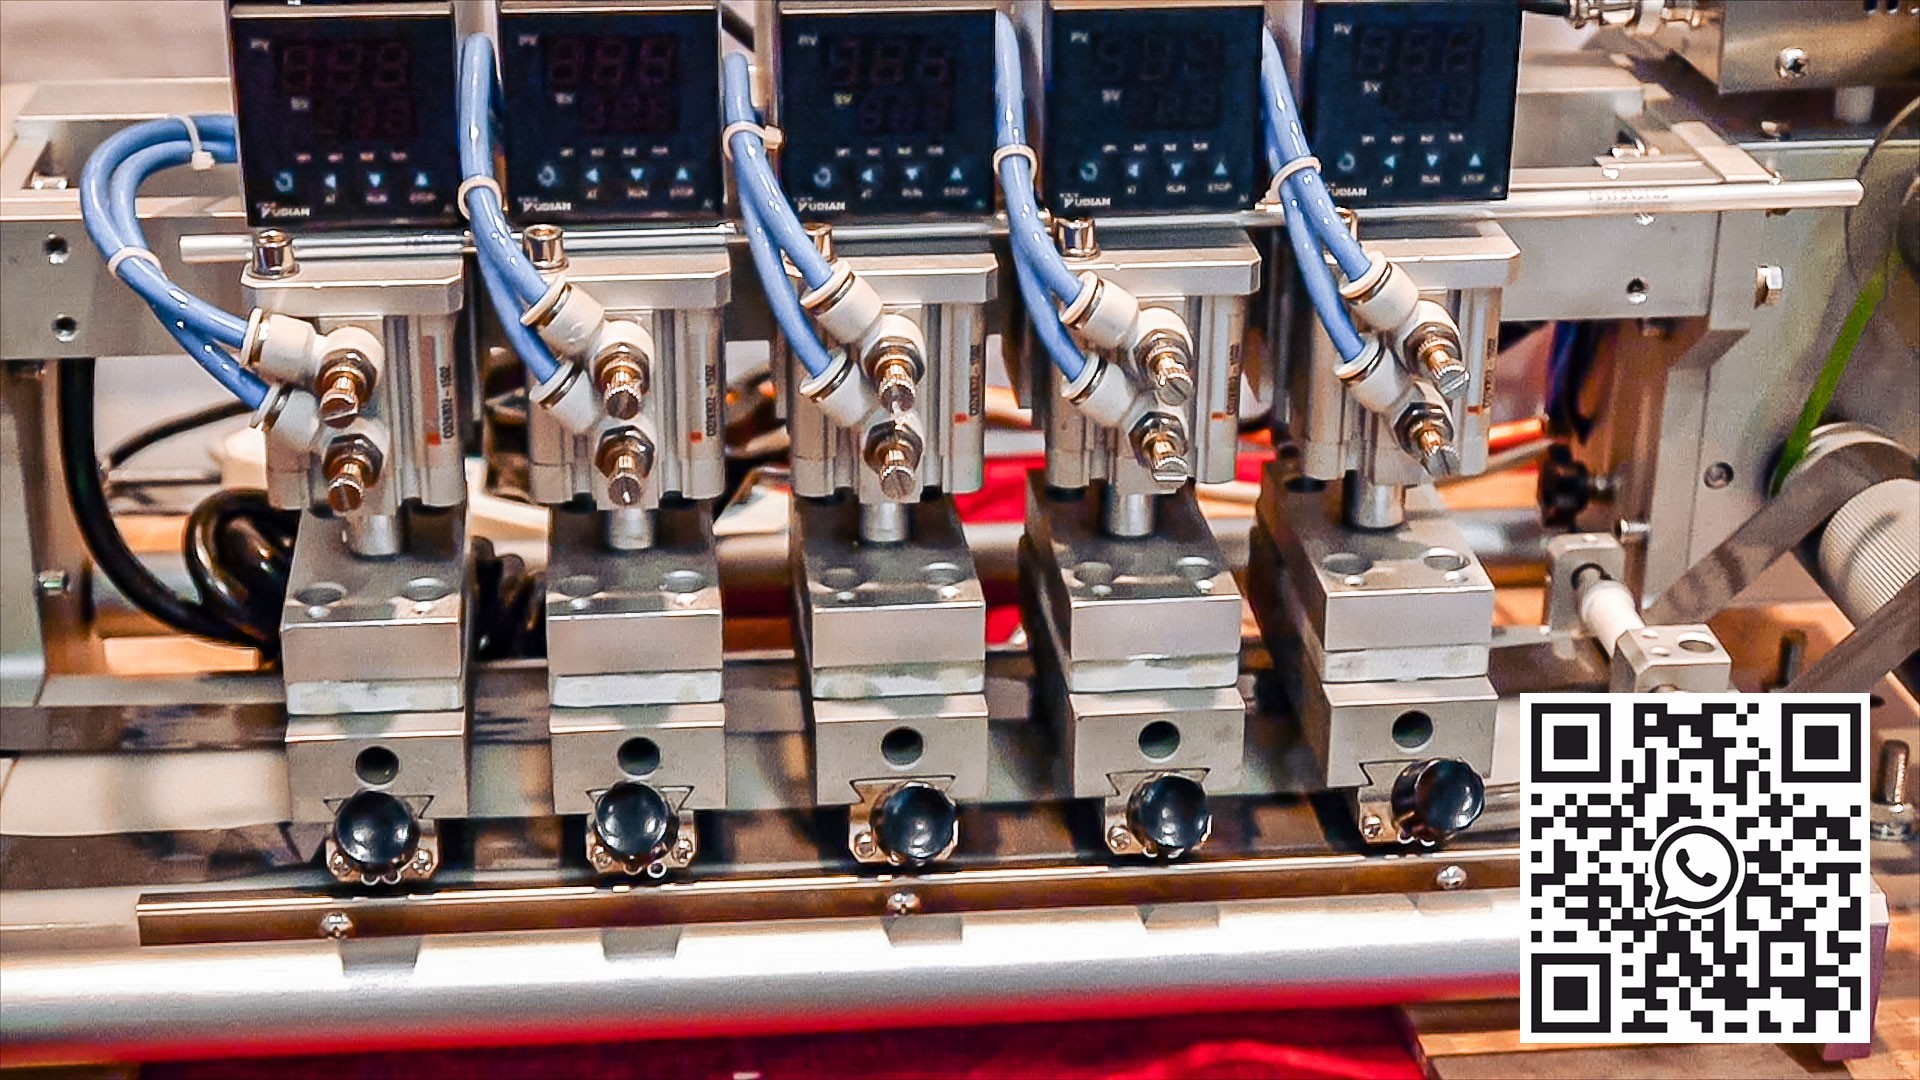 Automatyczny sprzęt do drukowania okresu przydatności do spożycia na materiałach rolkowych Niemcy